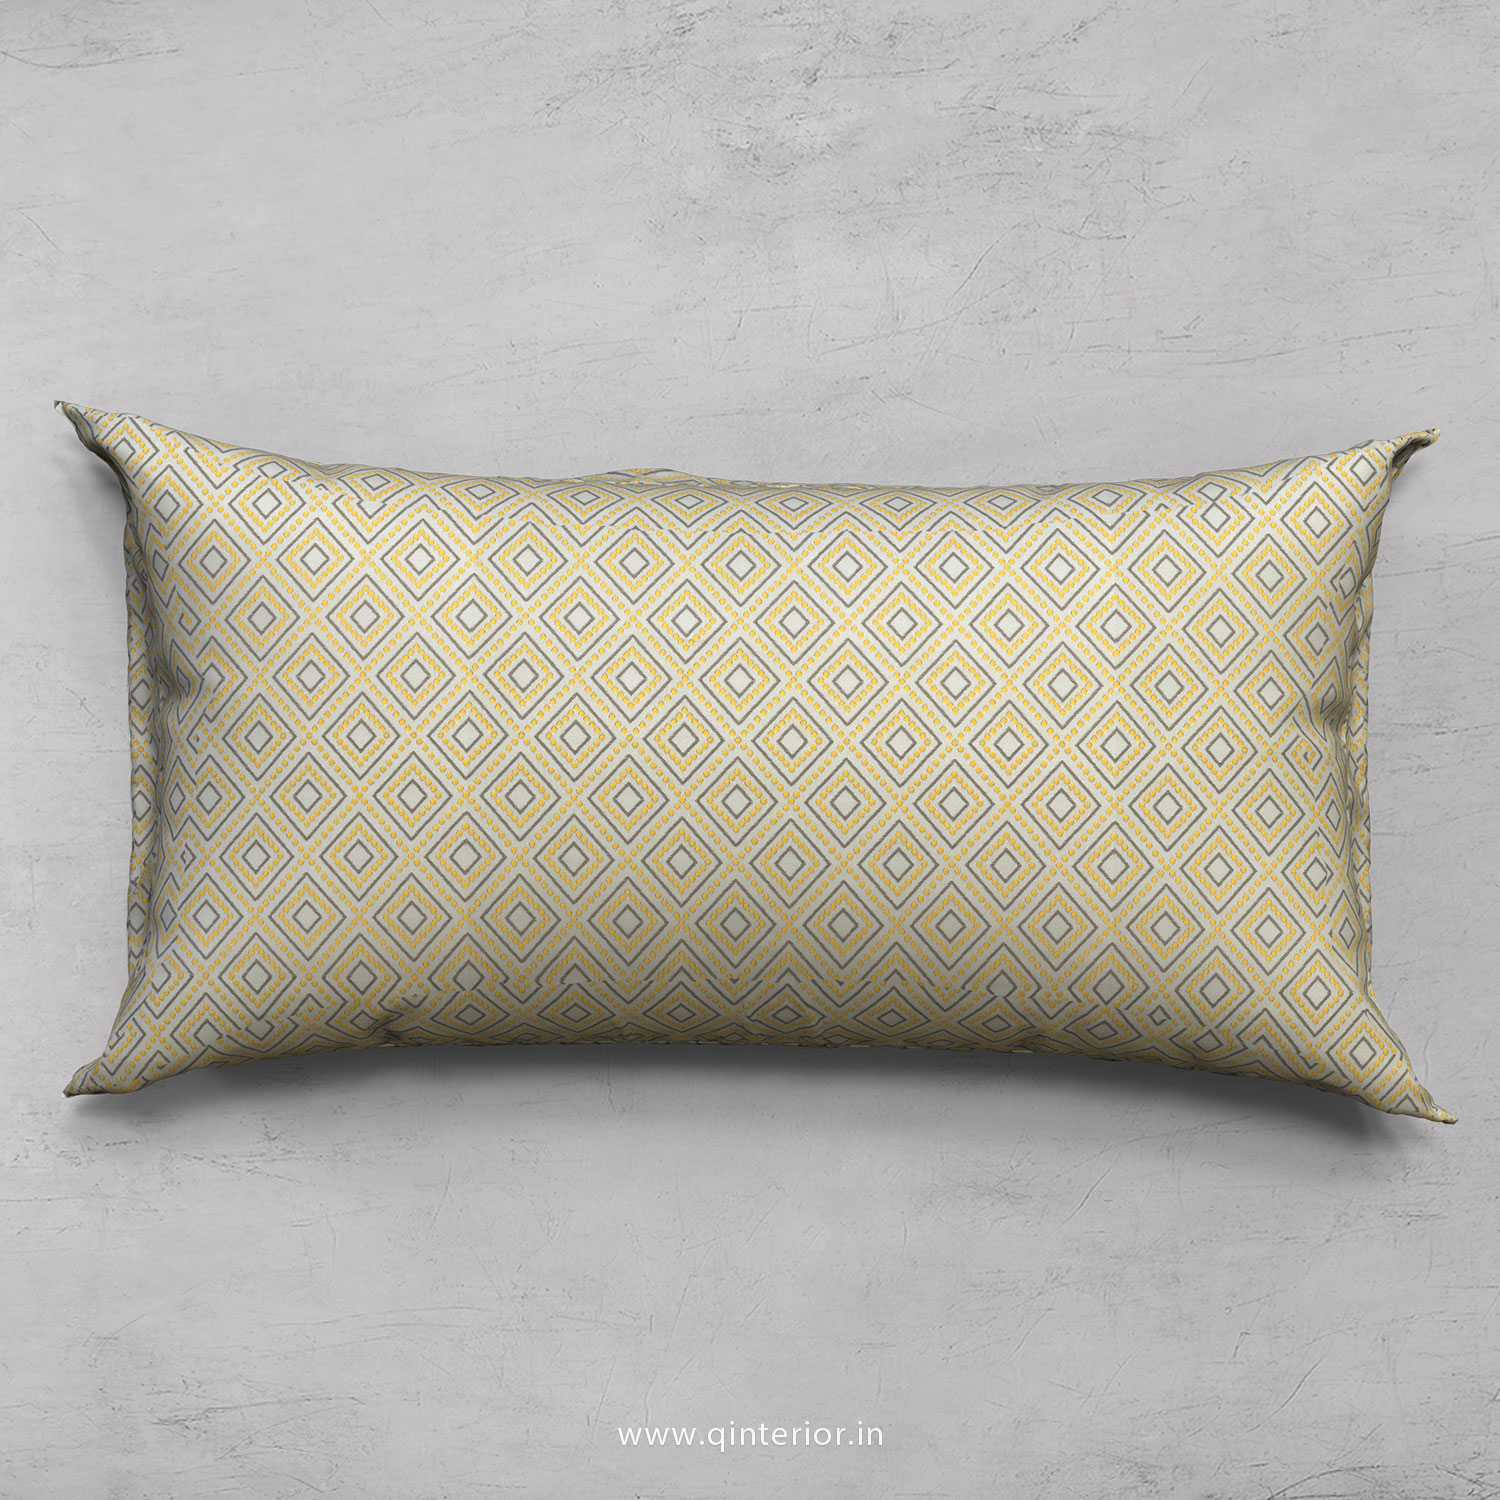 Cushion With Cushion Cover in Jacquard- CUS002 JQ29